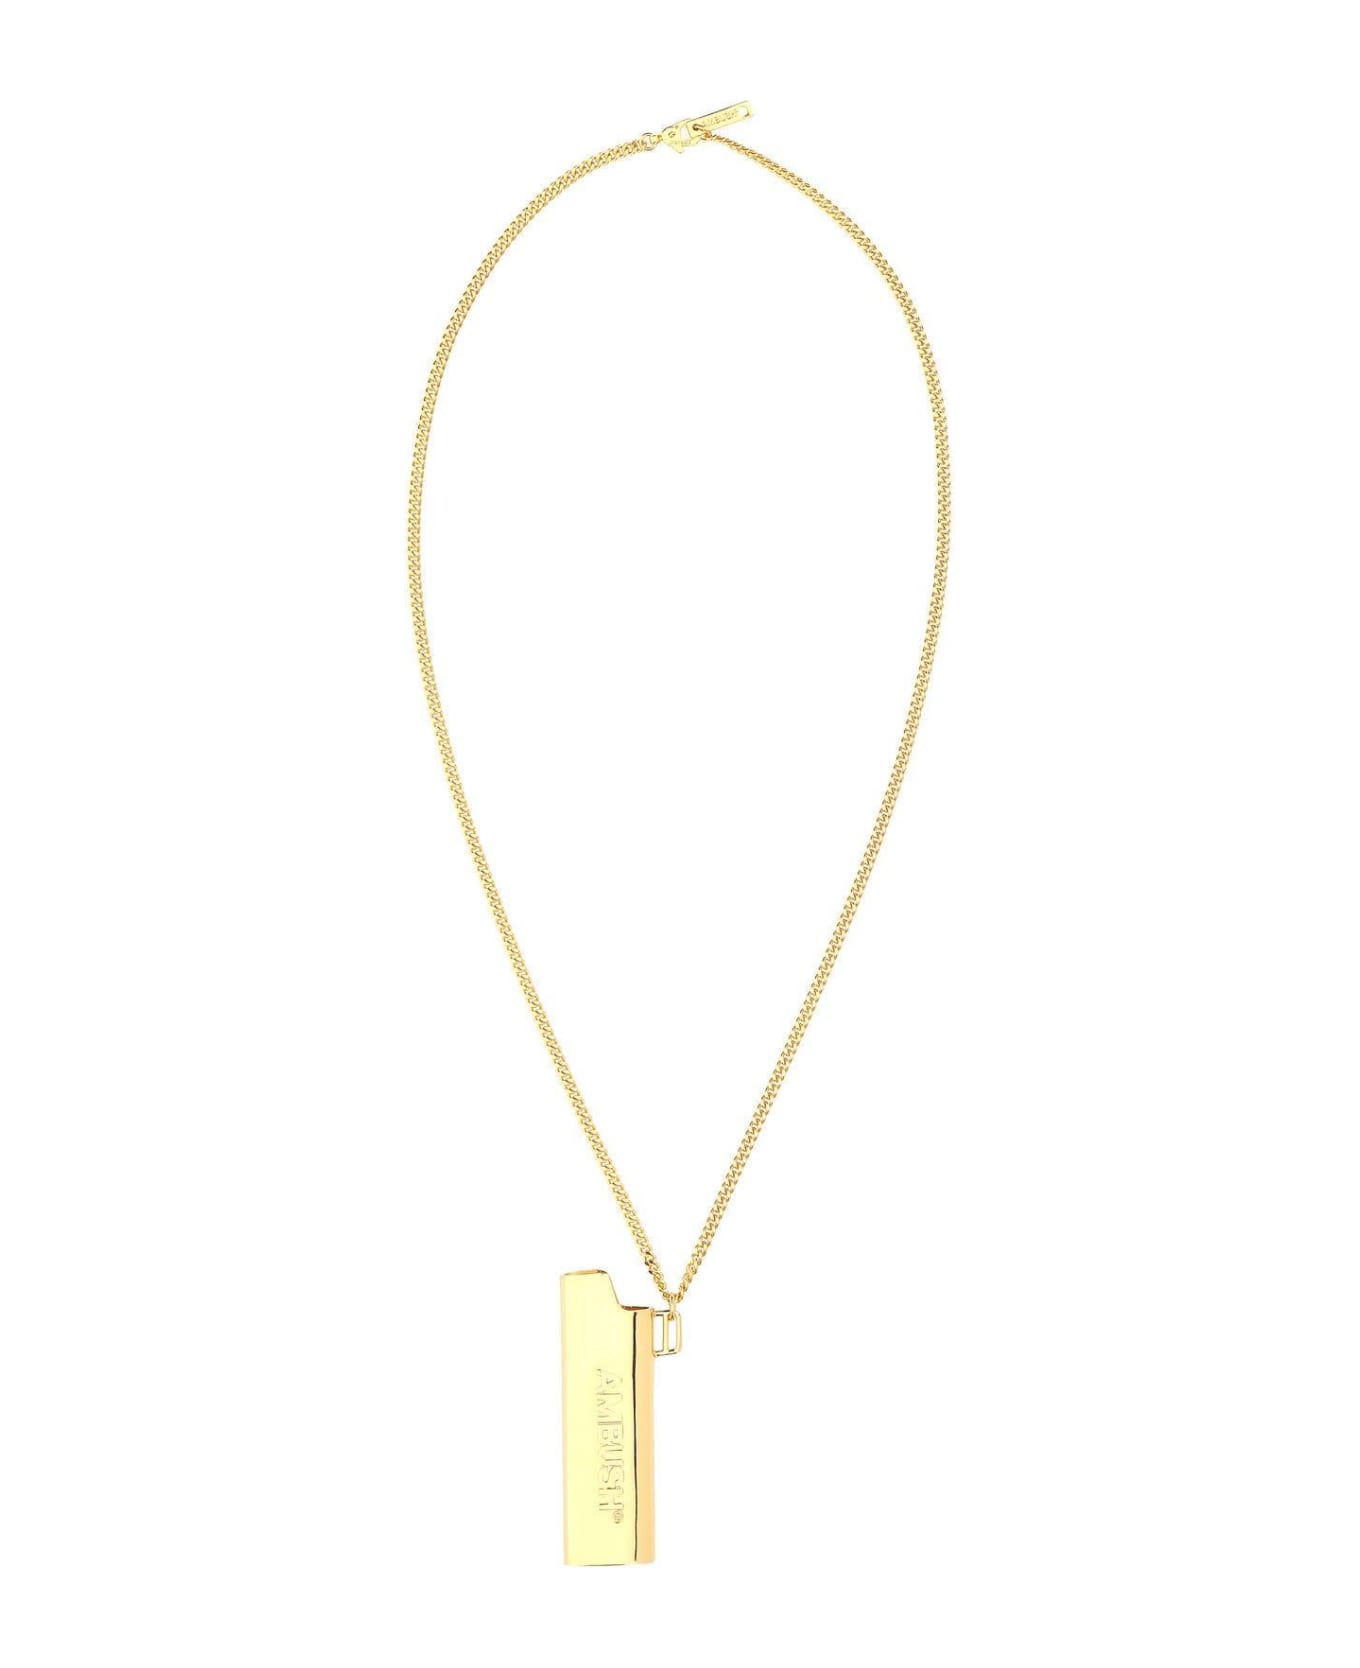 AMBUSH Gold Metal Lighter Case Necklace - Golden ネックレス